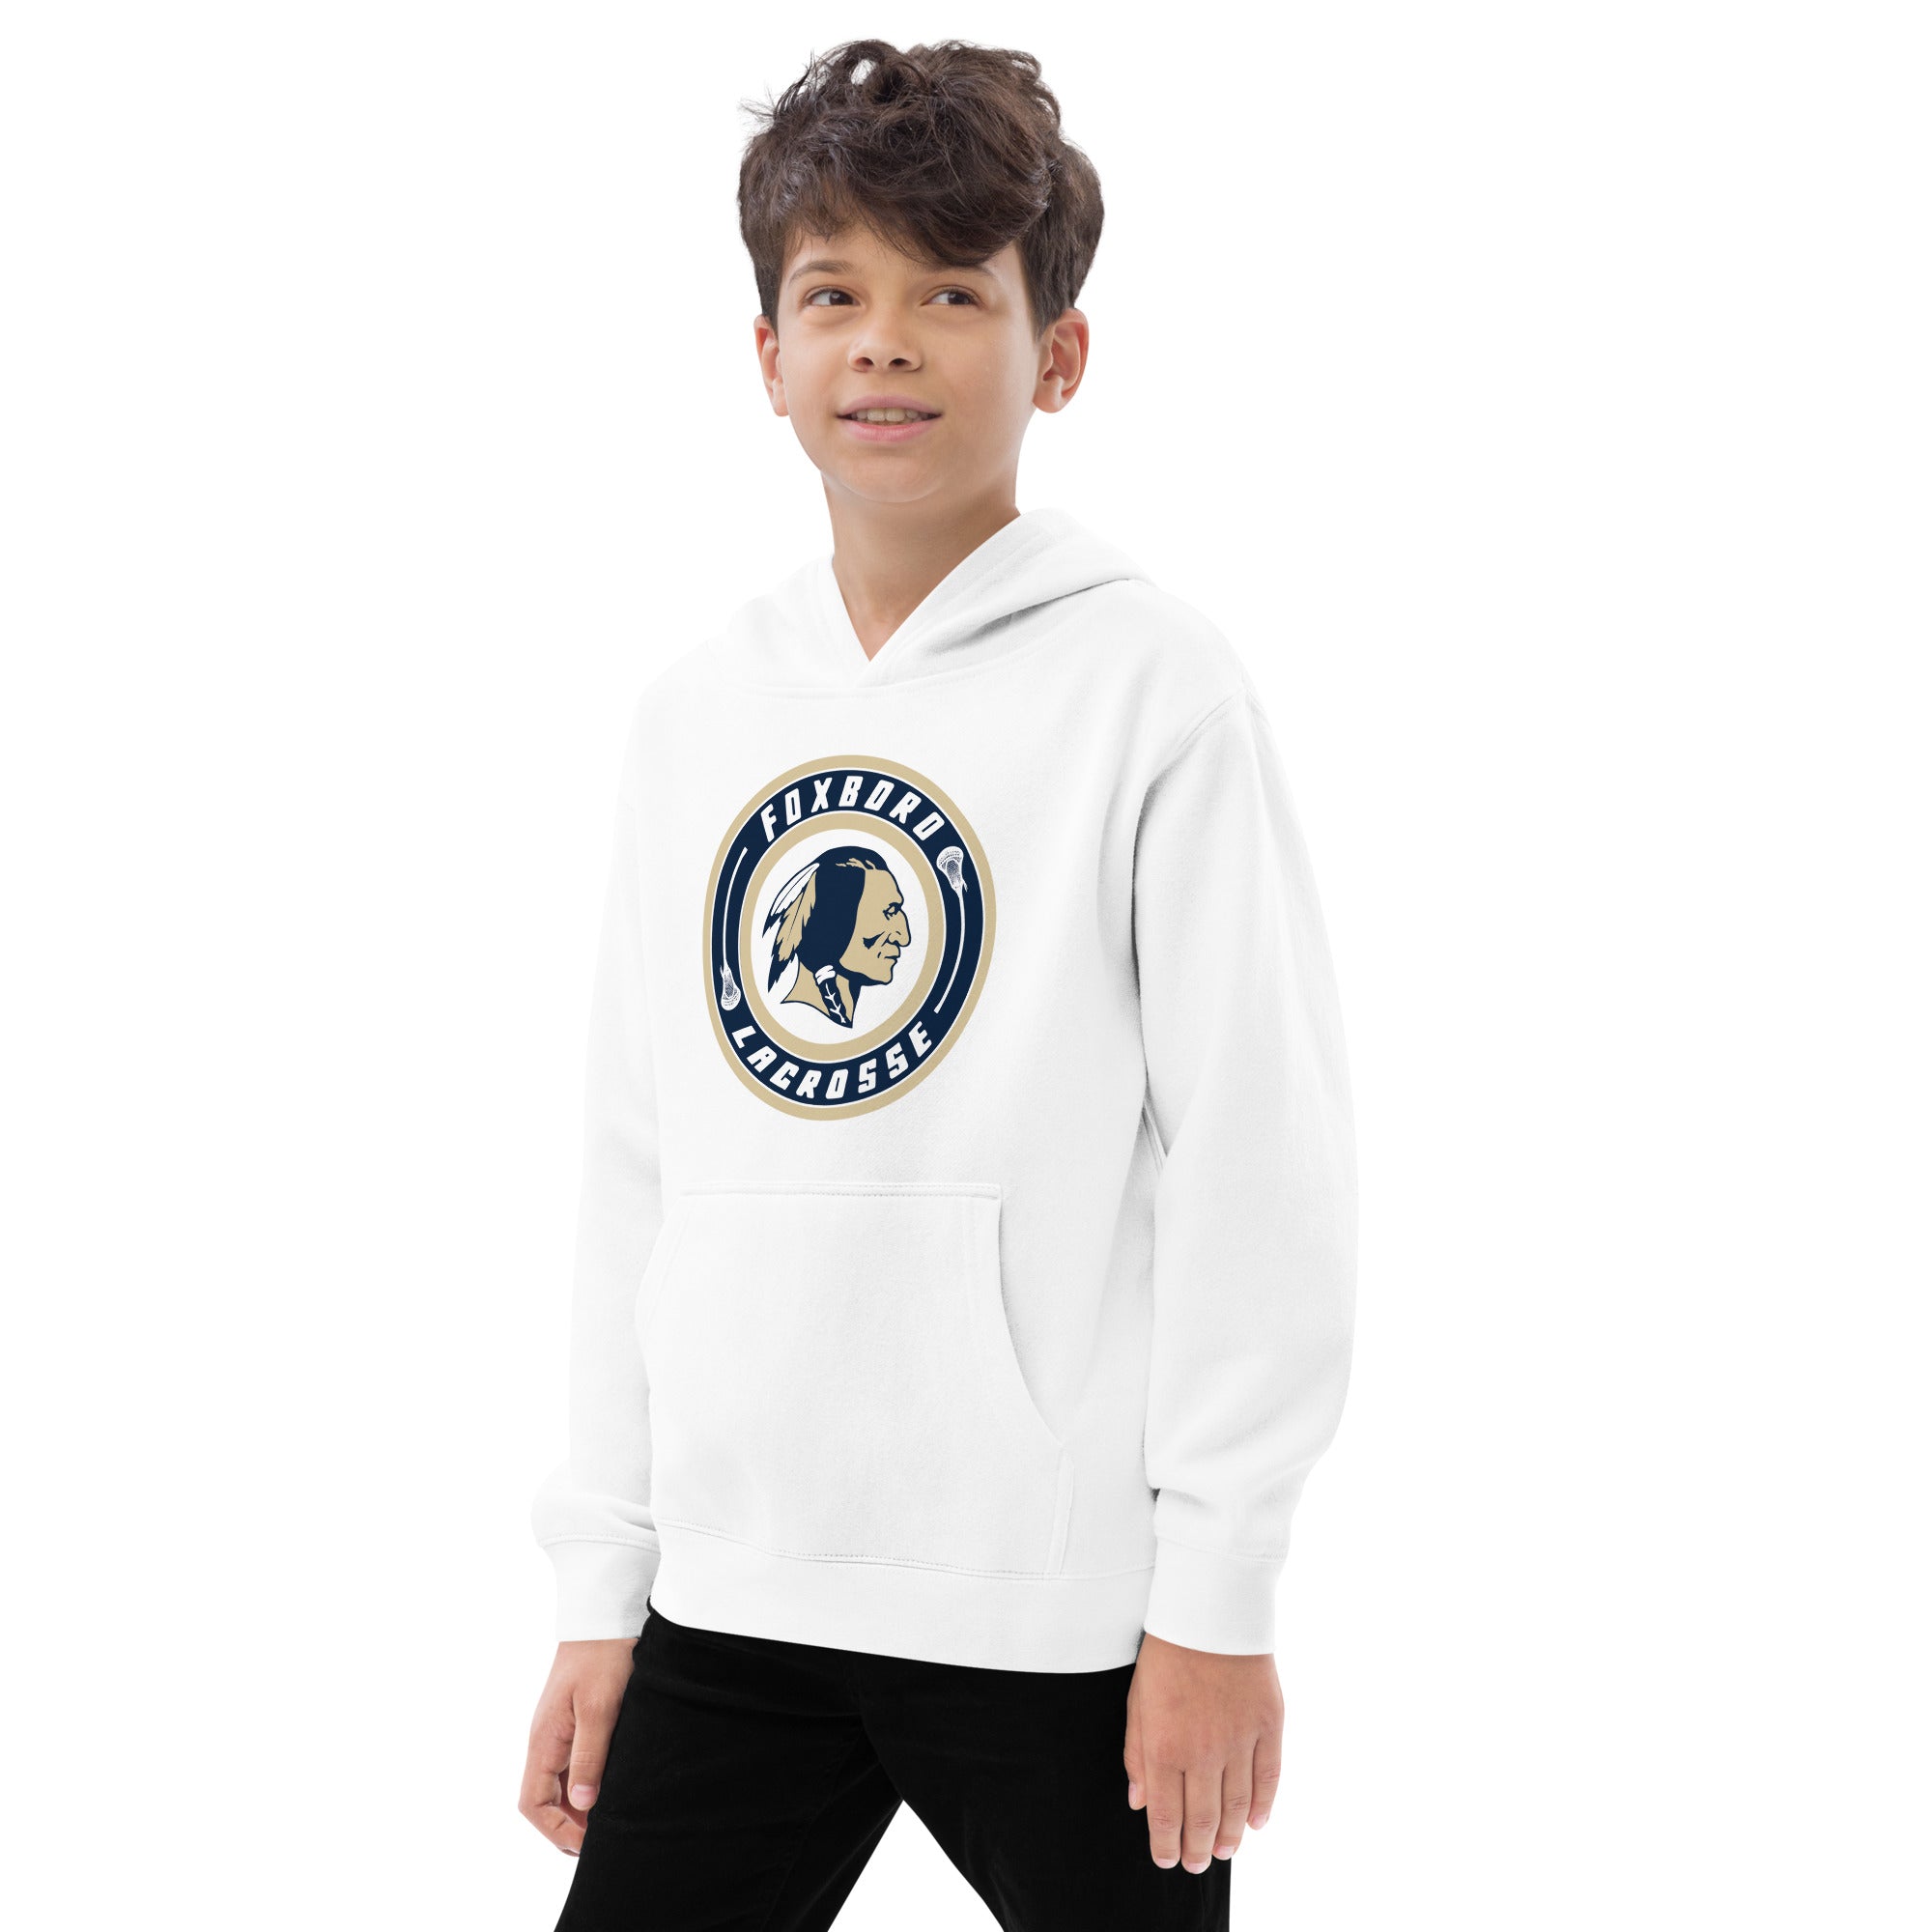 Foxboro Youth fleece hoodie